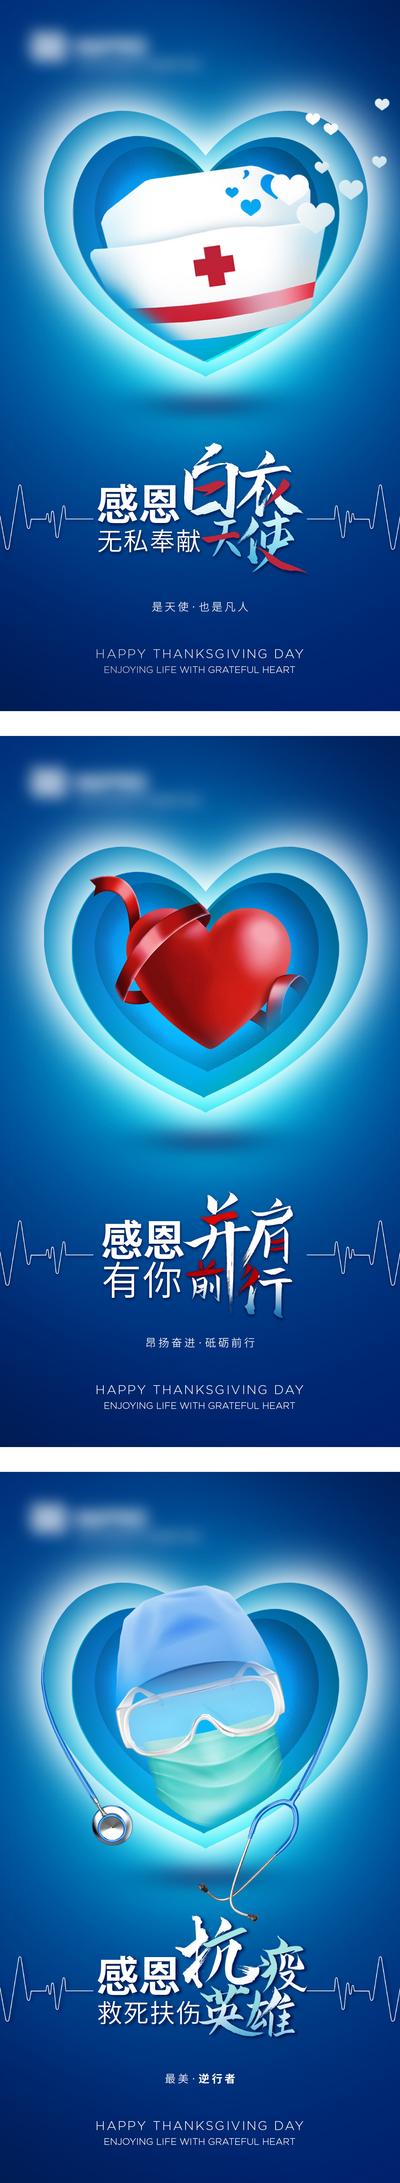 【南门网】海报 公历节日 感恩节 医生 护士 爱心 抗疫